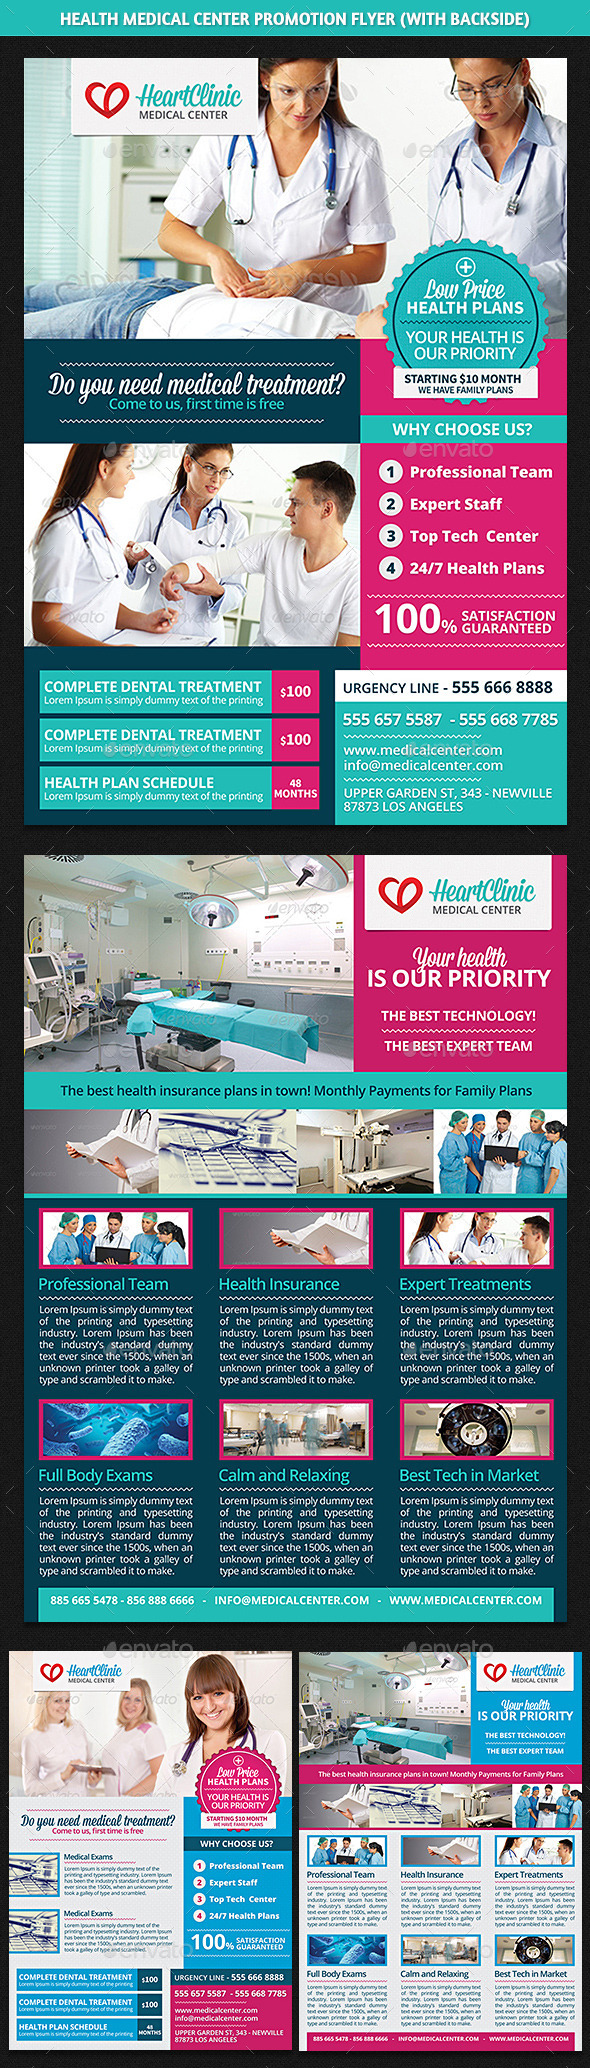 Health Medical Center Promotion Flyer